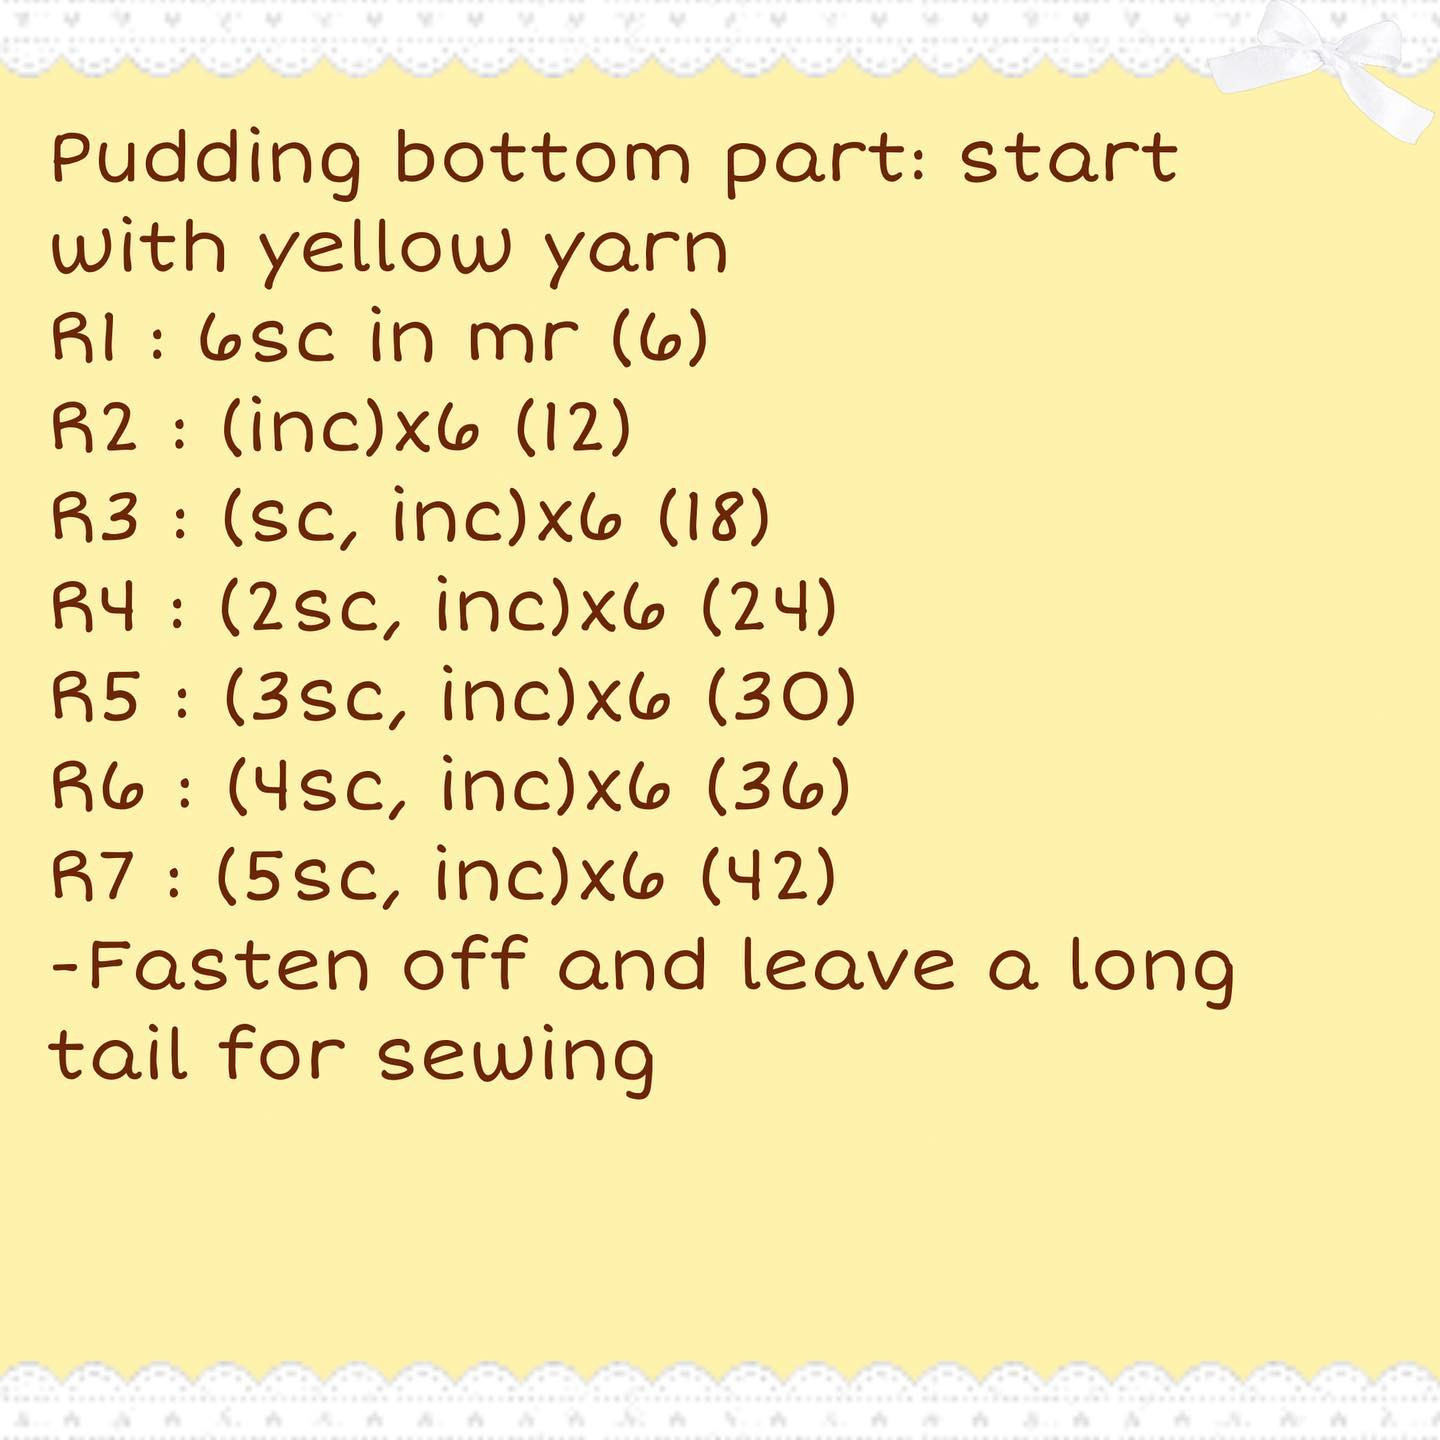 free crochet pattern pudding bunny